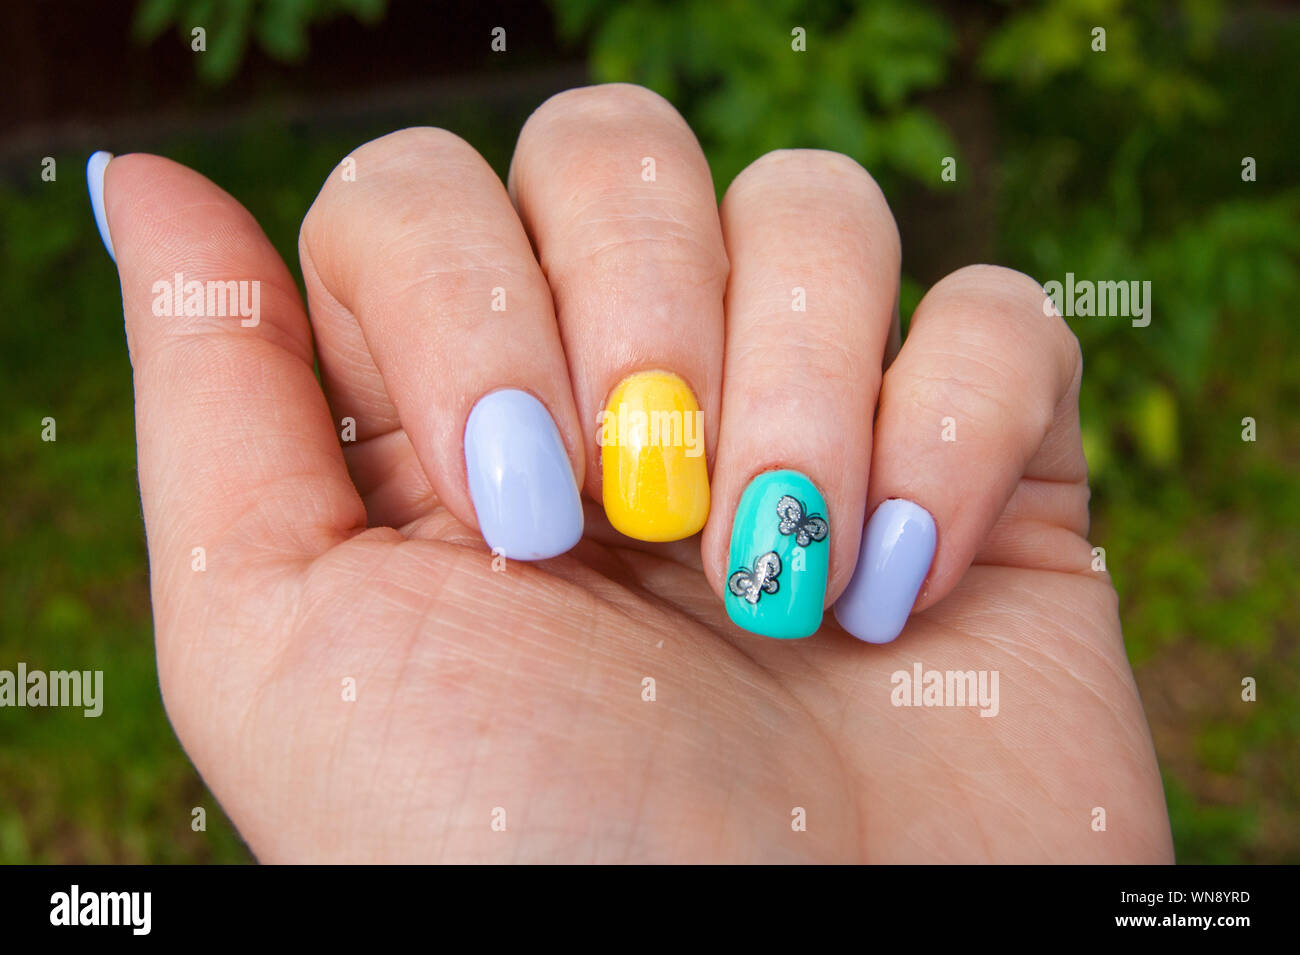 Maniküre - Gel polish Farbe in hellen Sommer Töne, Schmetterlinge sind auf einen Nagel eingefügt - Foto. Schellack, Nägel, Hände. Gesichtspflege, Glamour Stockfoto